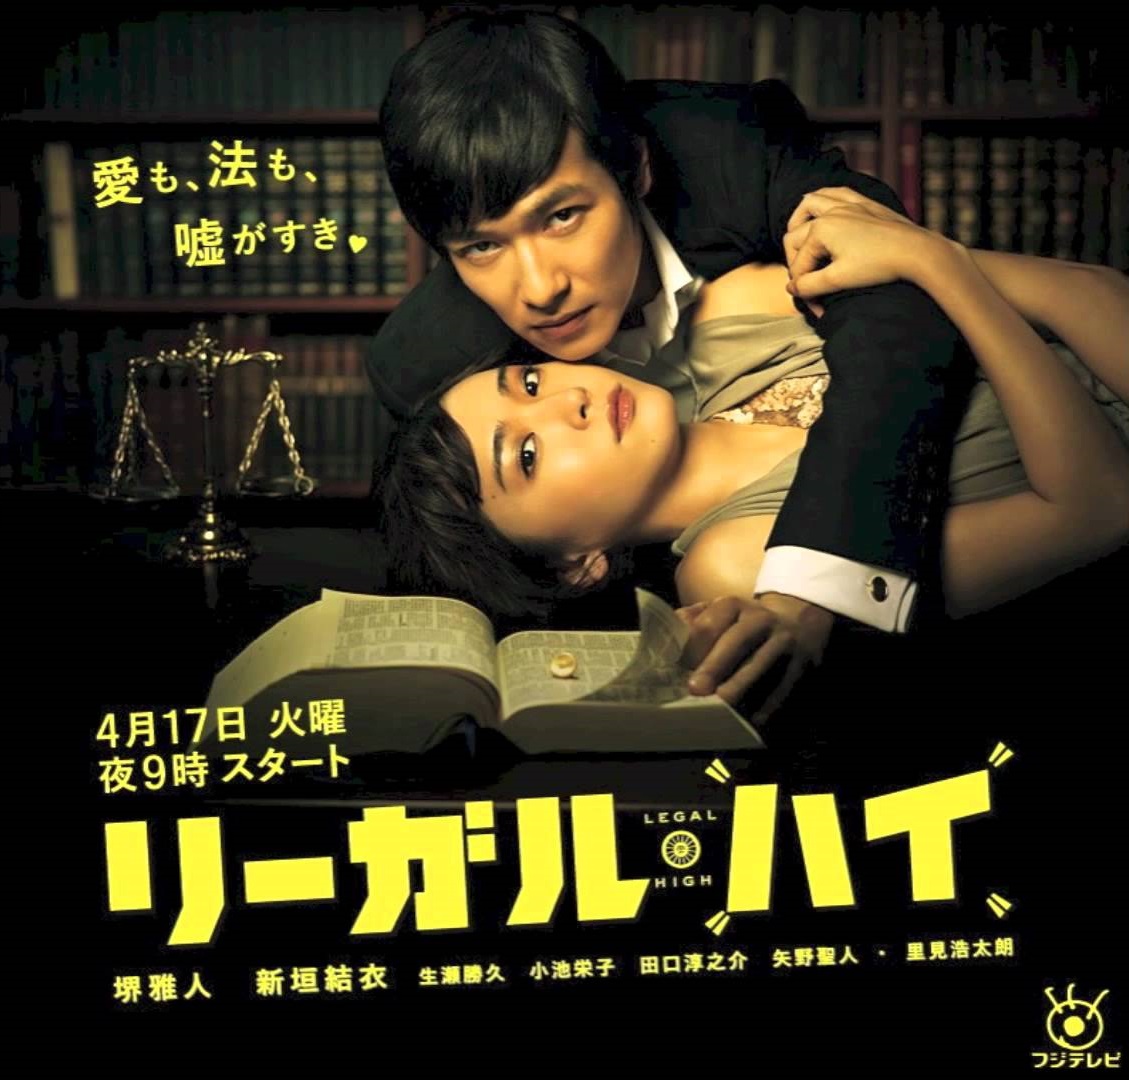 「律政狂人」系列編劇古澤良太膺選日本最佳編劇。